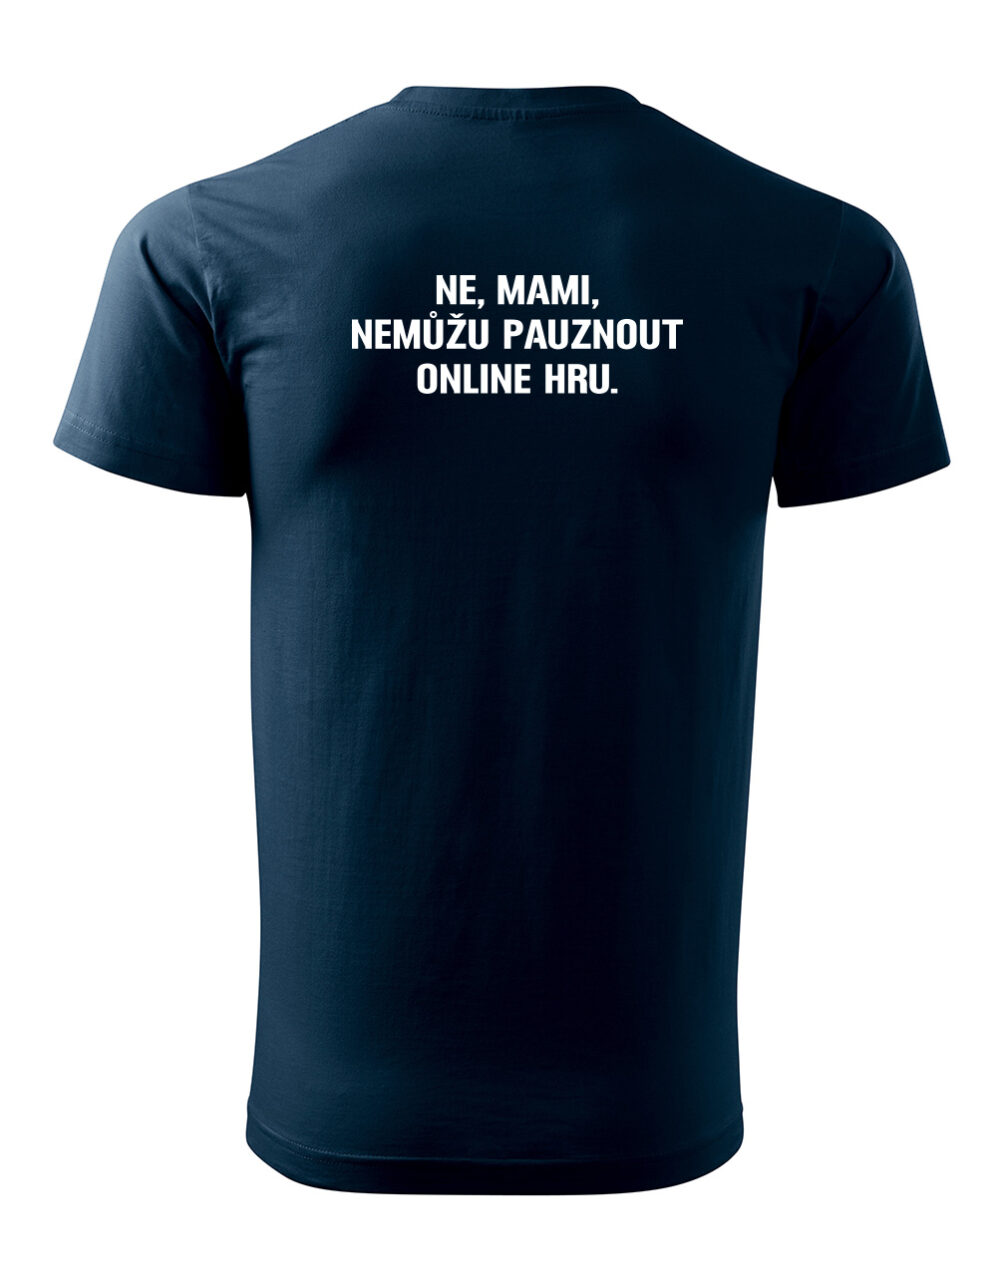 Pánské tričko s potiskem Nemůžu pauznout online hru námořní modrá